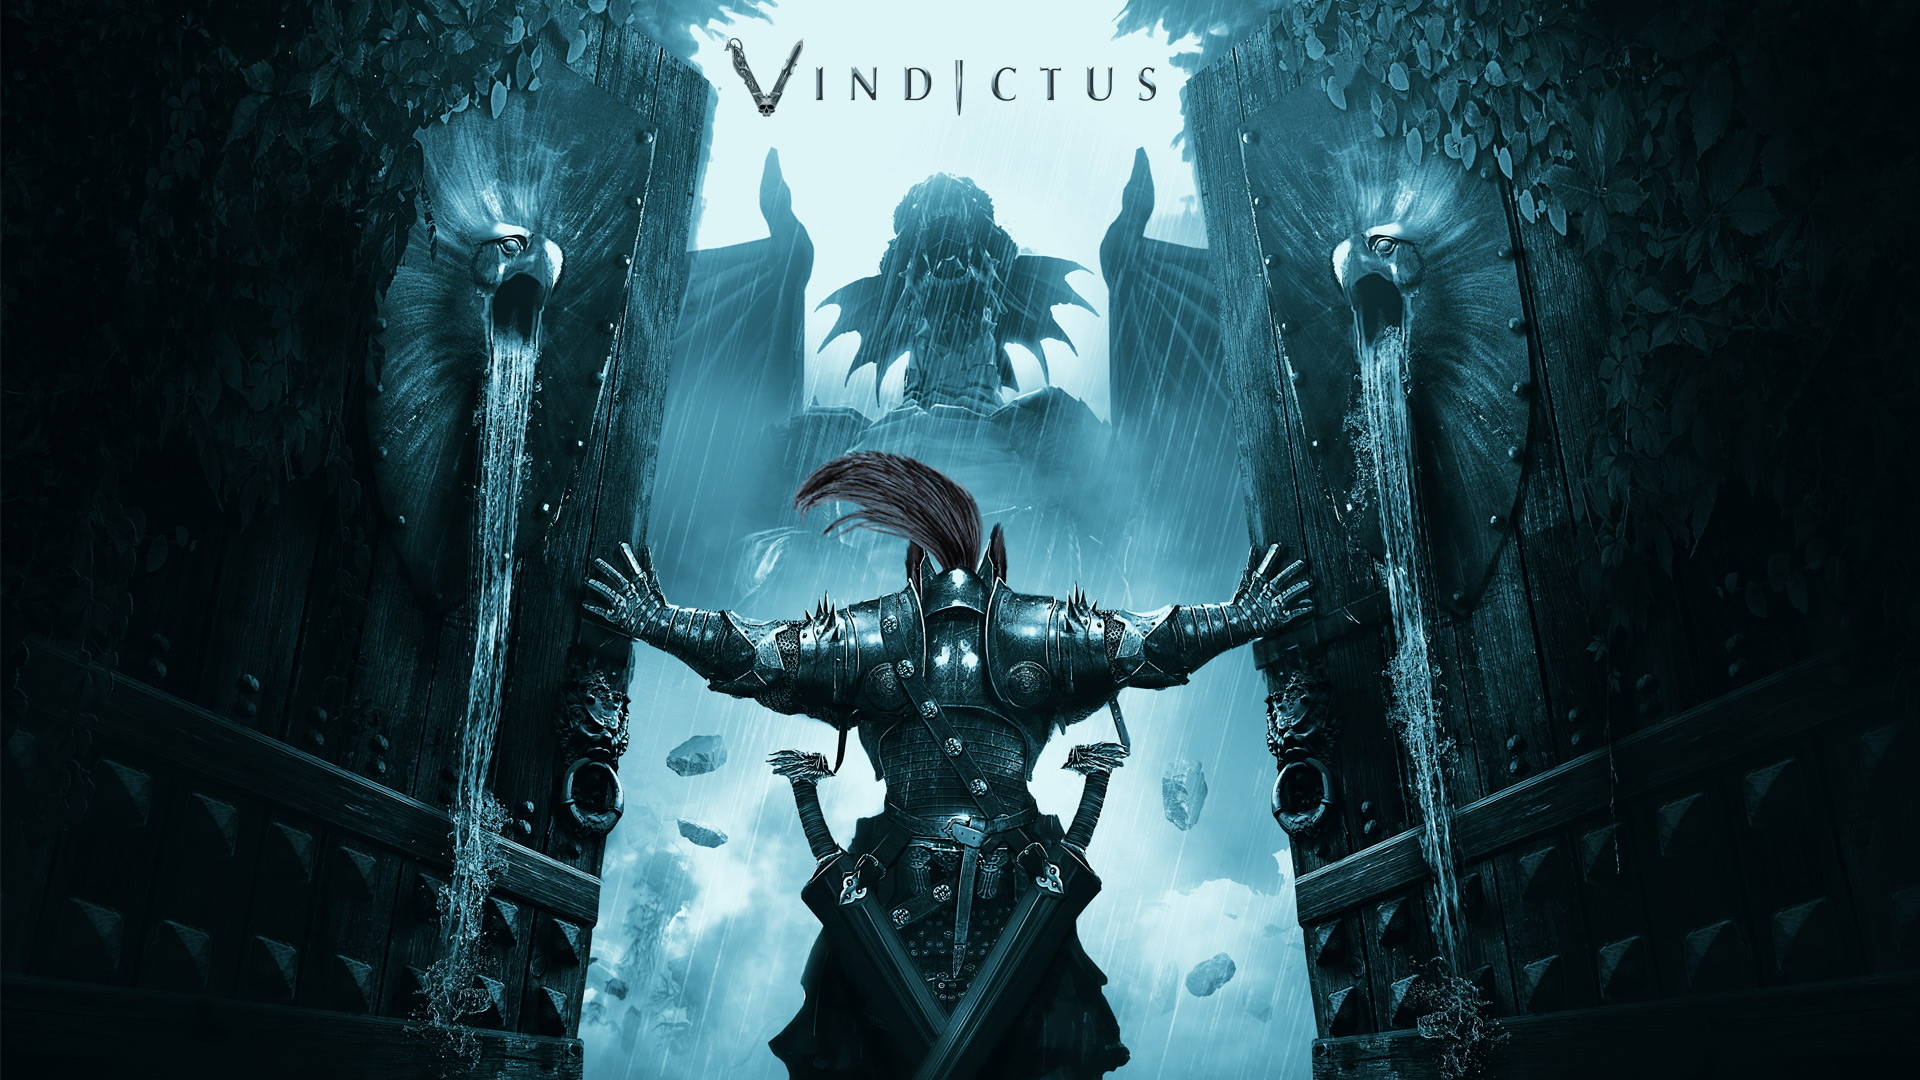 VINDICTUS game wallpaper